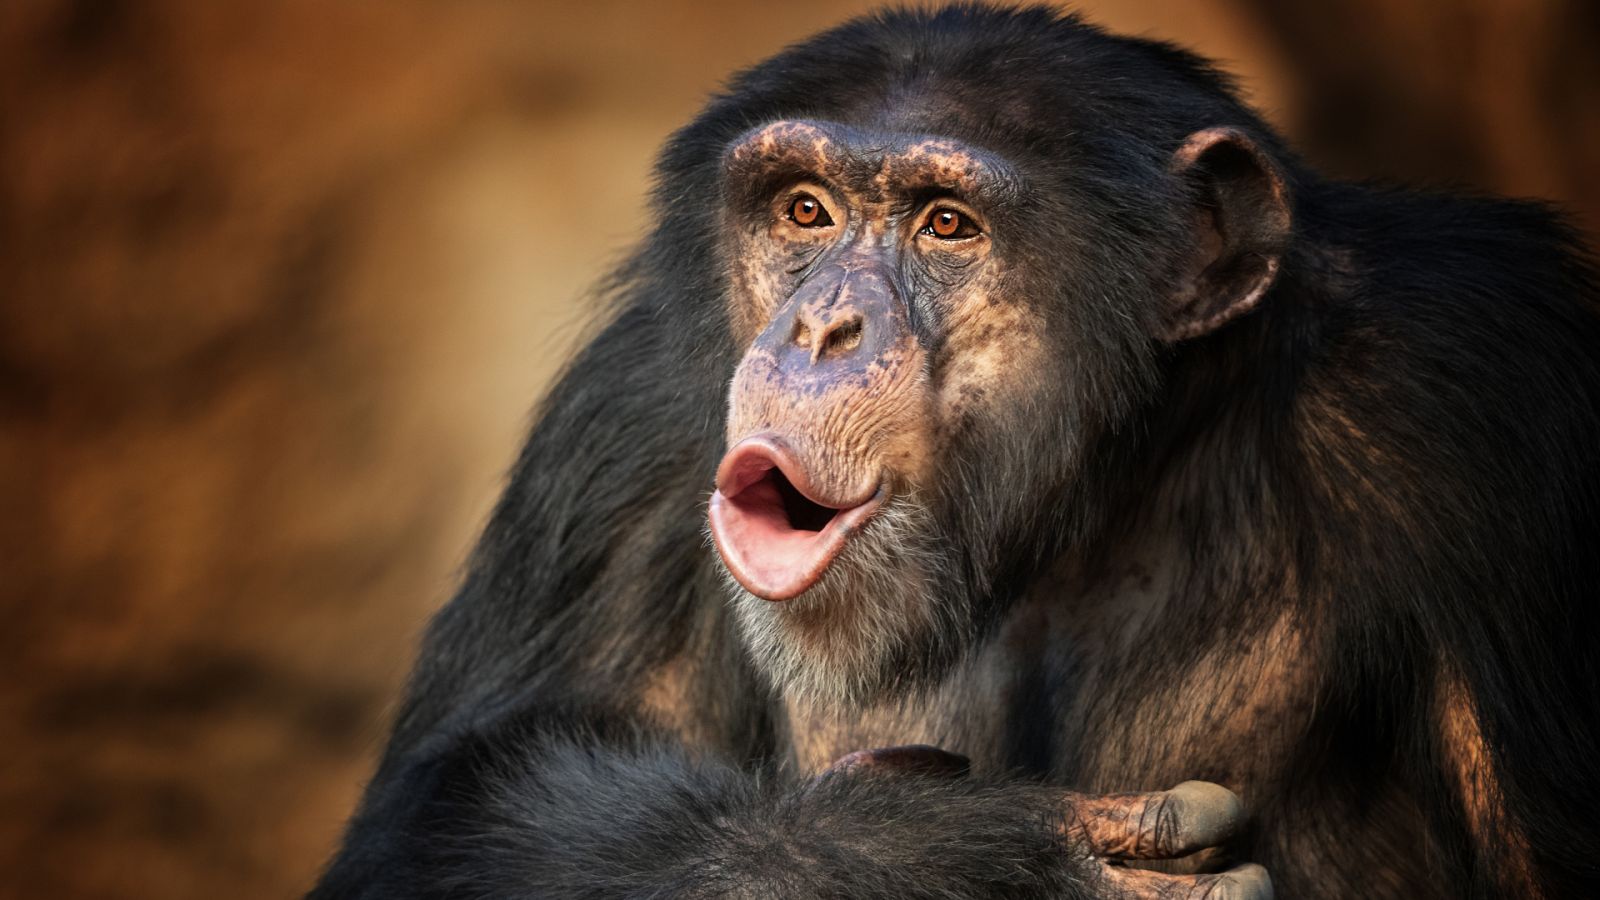 Preguntas a la historia - ¿De dónde viene la palabra chimpancé? - 28/05/20 - Escuchar ahora